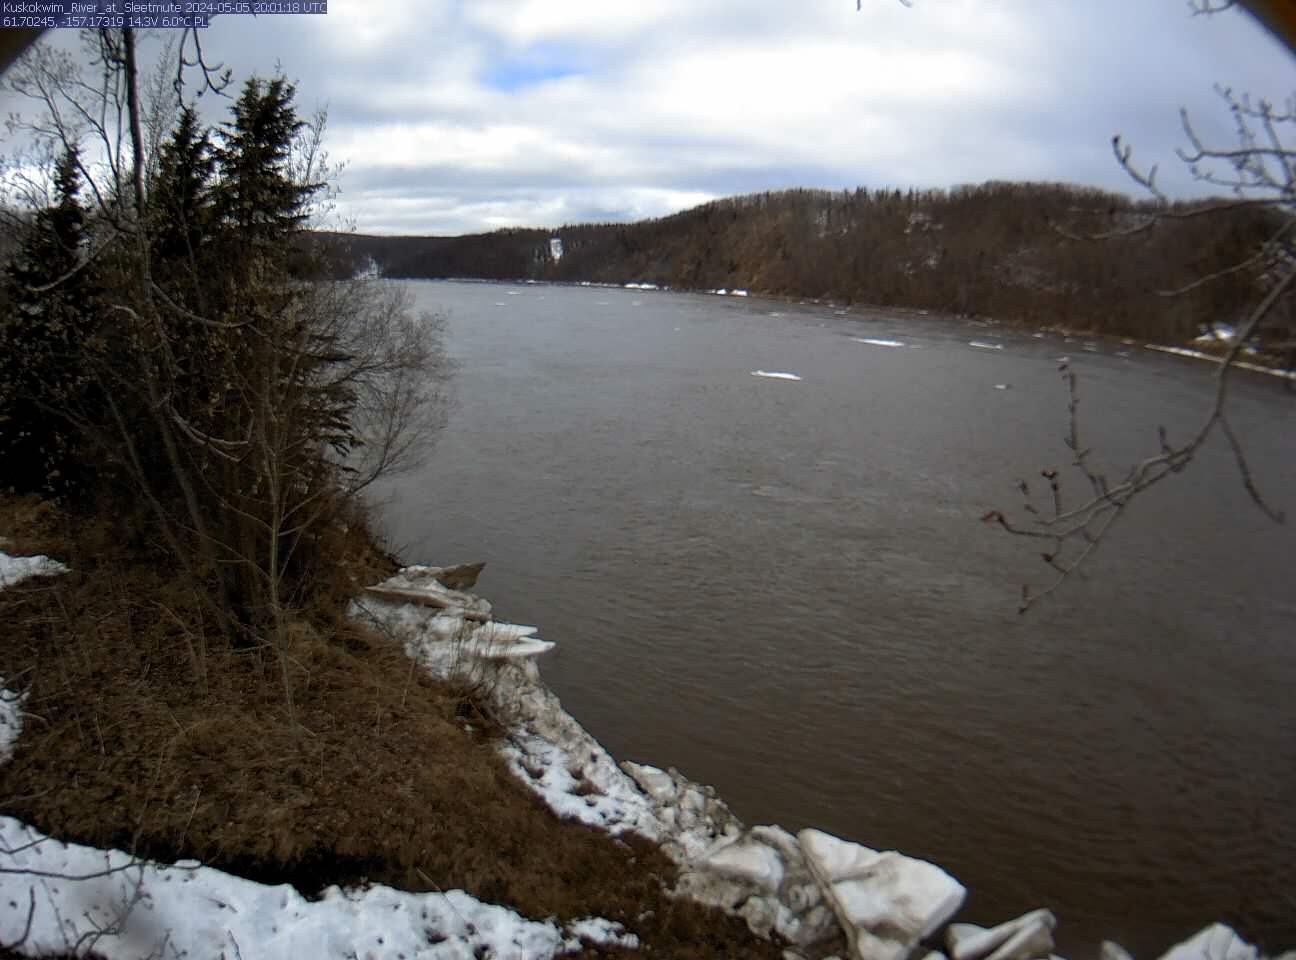 Kuskokwim River at Sleetmute Latest Images